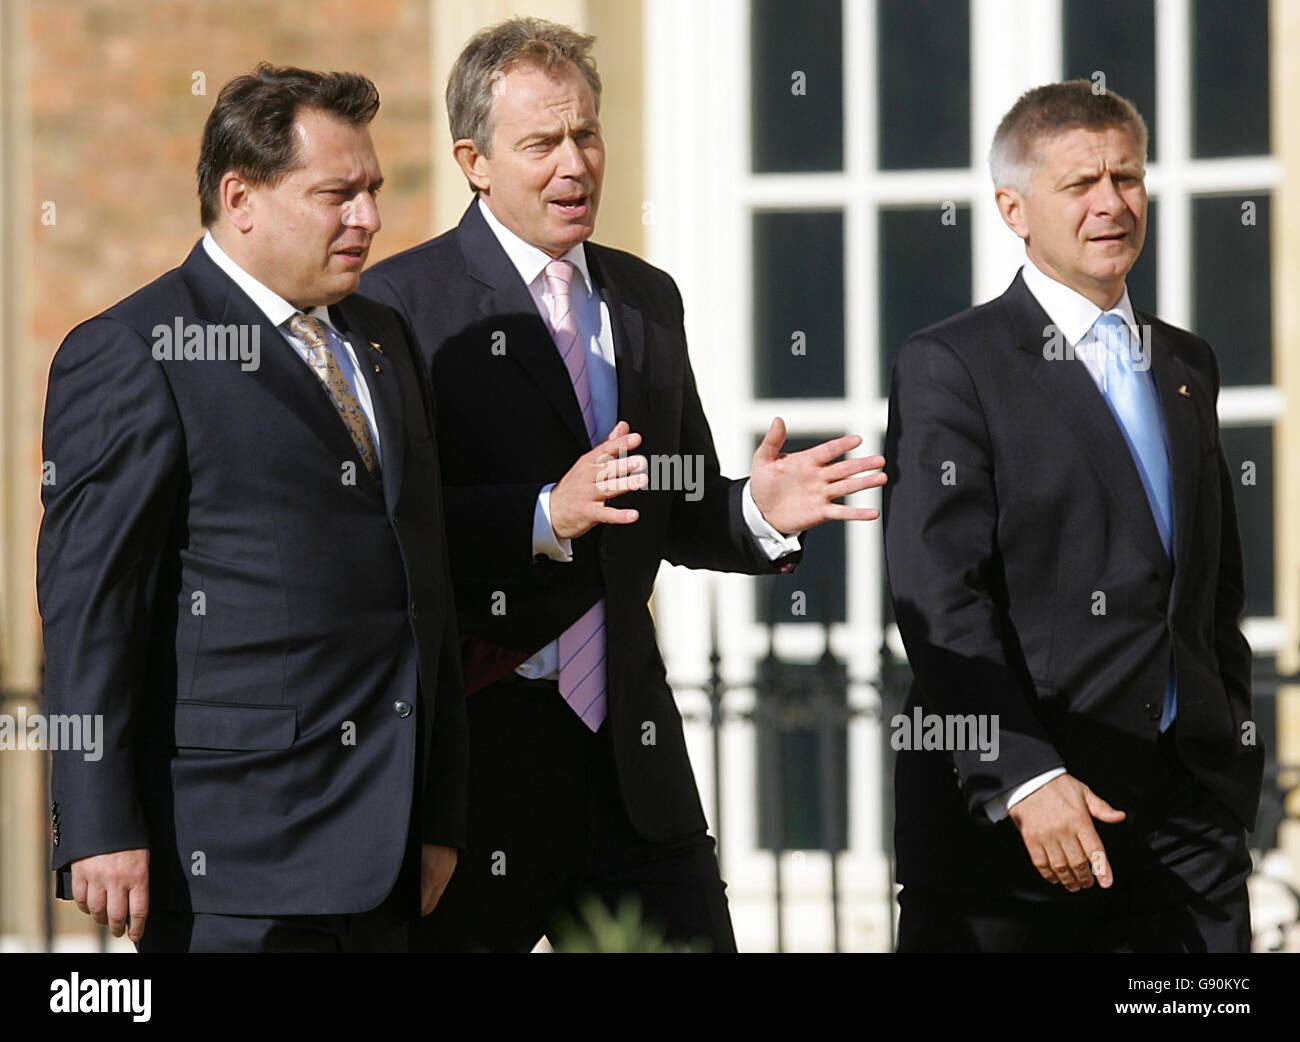 Le Premier ministre britannique Tony Blair (au centre) s'entretient avec le Premier ministre de la République tchèque Jiri Paroubek (à gauche) et le Premier ministre polonais Marek Belka, en tant que chefs d'État de l'UE, qui se réunissent au palais de Hampton court, le jeudi 27 octobre 2005, pour un sommet informel des dirigeants de l'UE. Voir PA Story SUMMIT UE. APPUYEZ SUR ASSOCIATION photo. Le crédit photo devrait être : PA/Odd Andersen/WPA Pool/AFP Banque D'Images